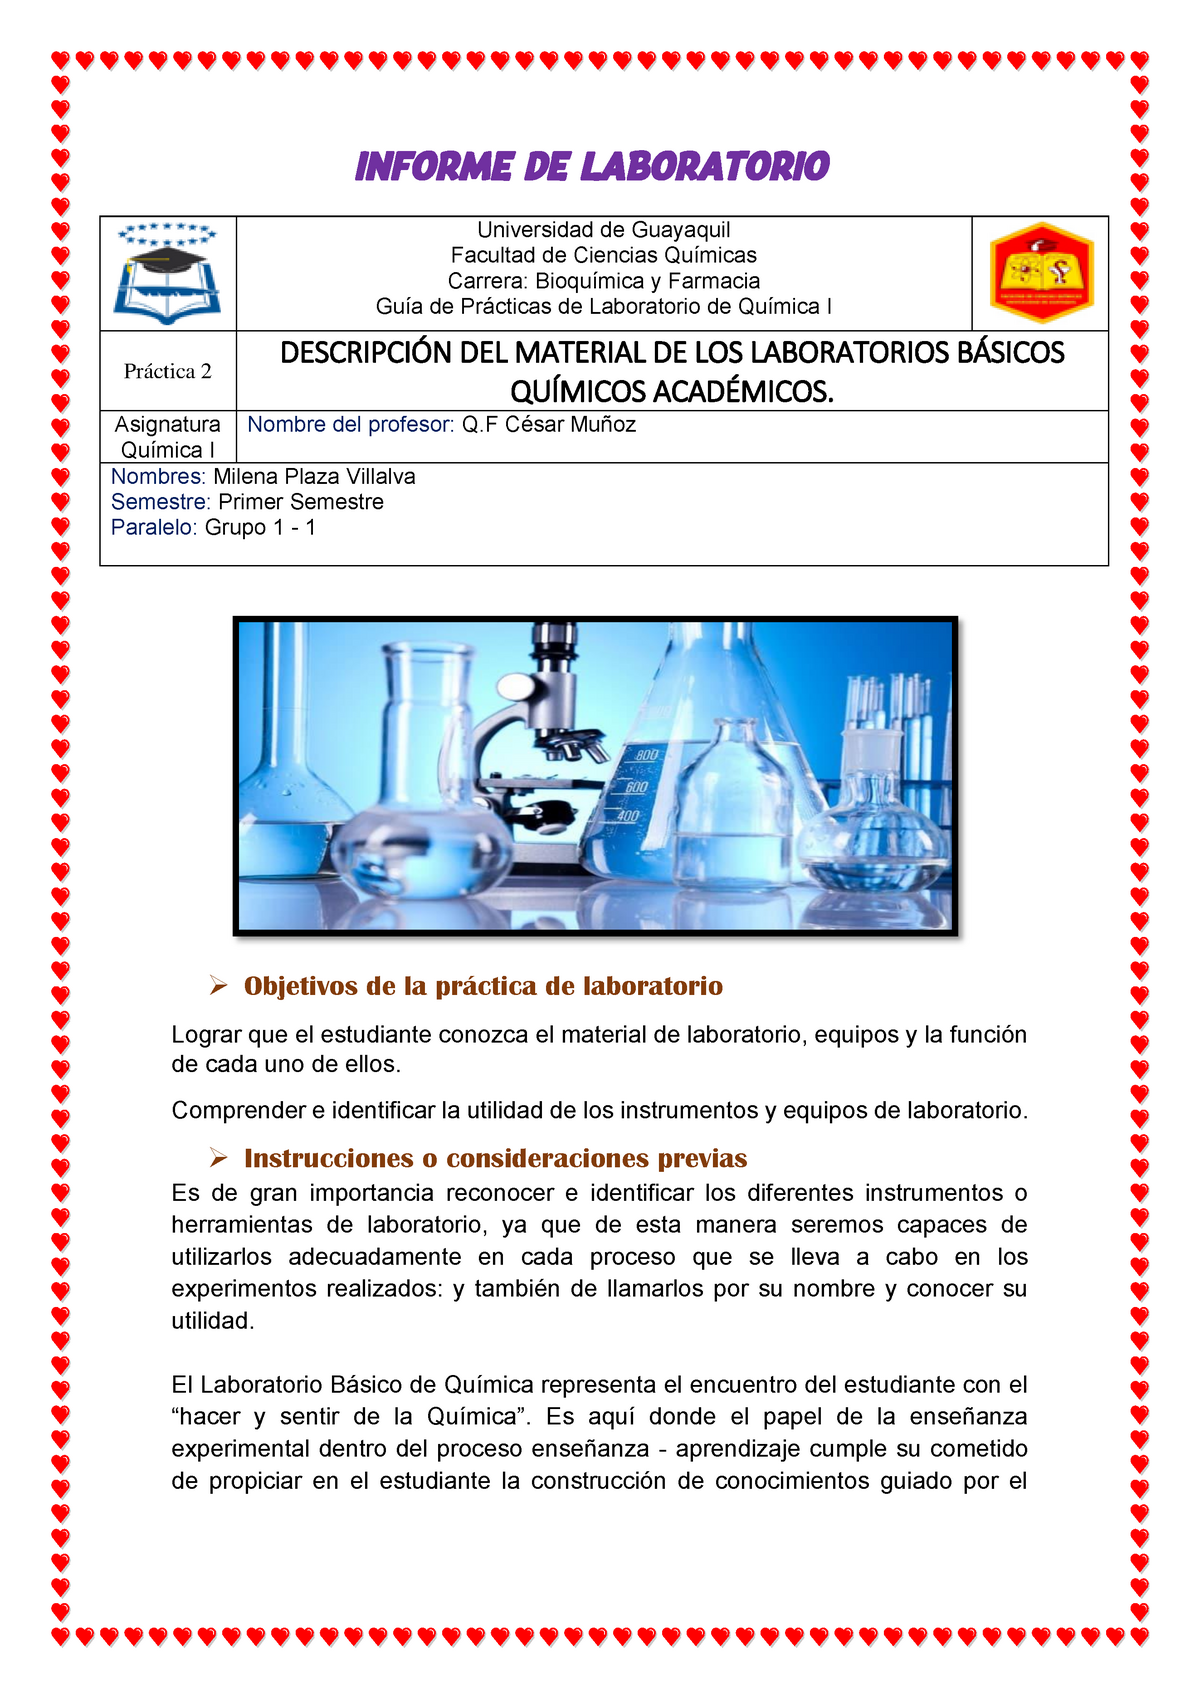 Informe DE Laboratorio 2 - INFORME DE LABORATORIO Universidad de Guayaquil  Facultad de Ciencias - Studocu